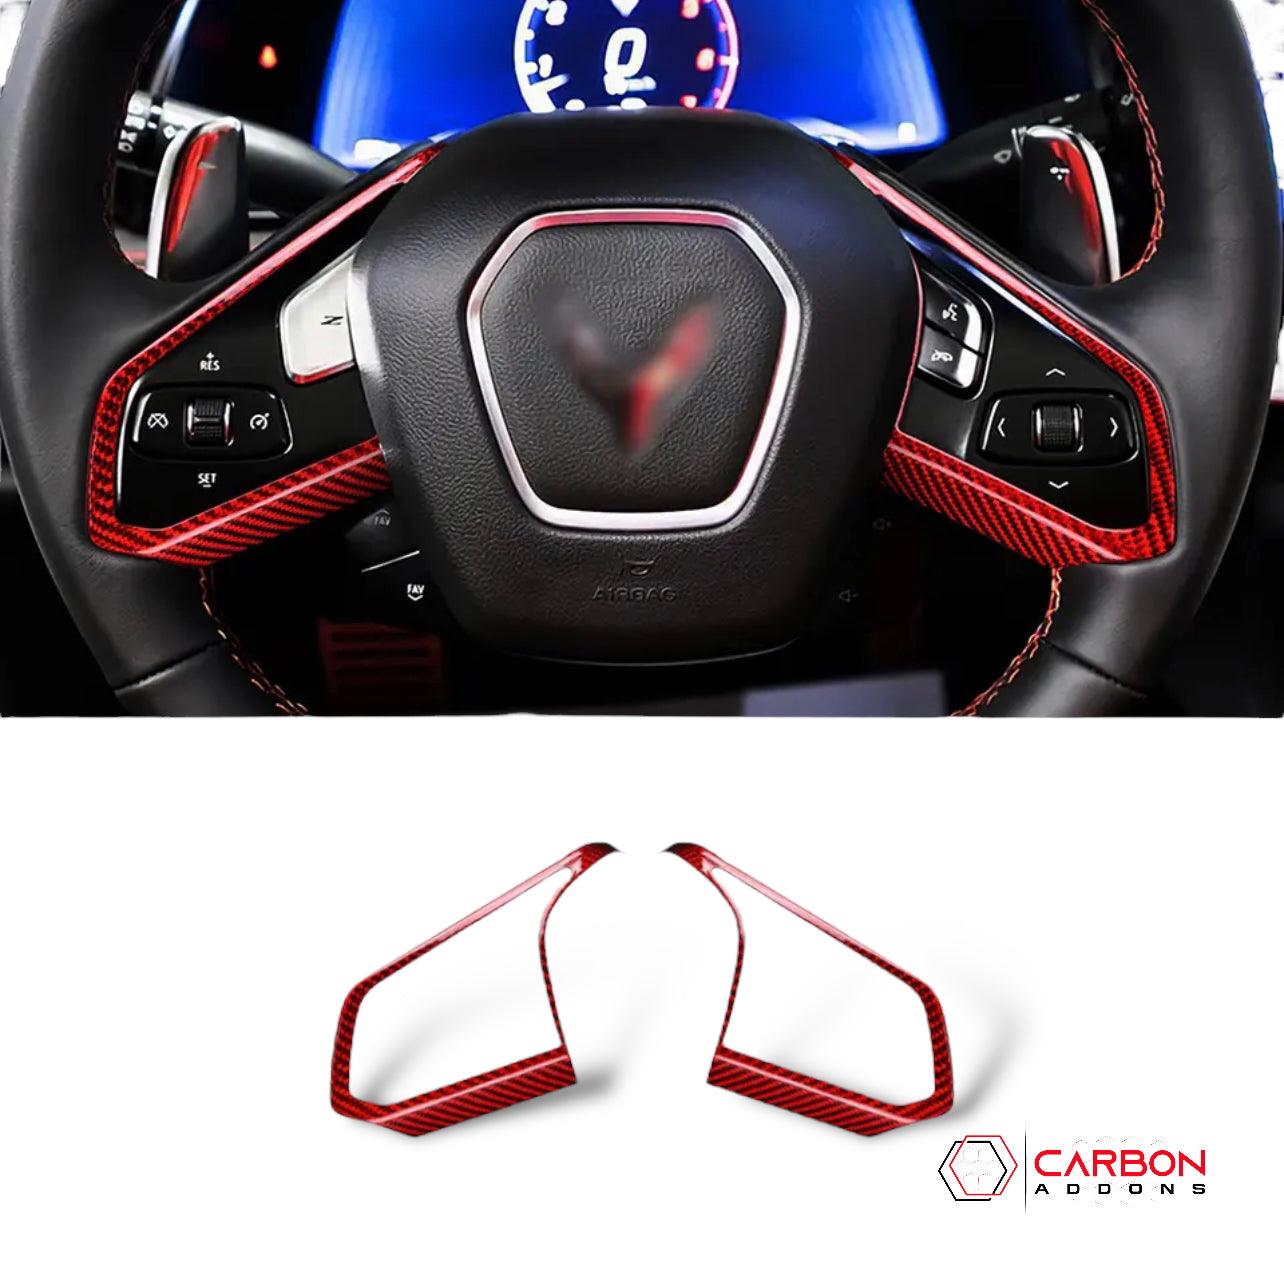 [2pcs] C8 Corvette Carbon Fiber Steering Chrome Trim Delete Covers - carbonaddons Carbon Fiber Parts, Accessories, Upgrades, Mods